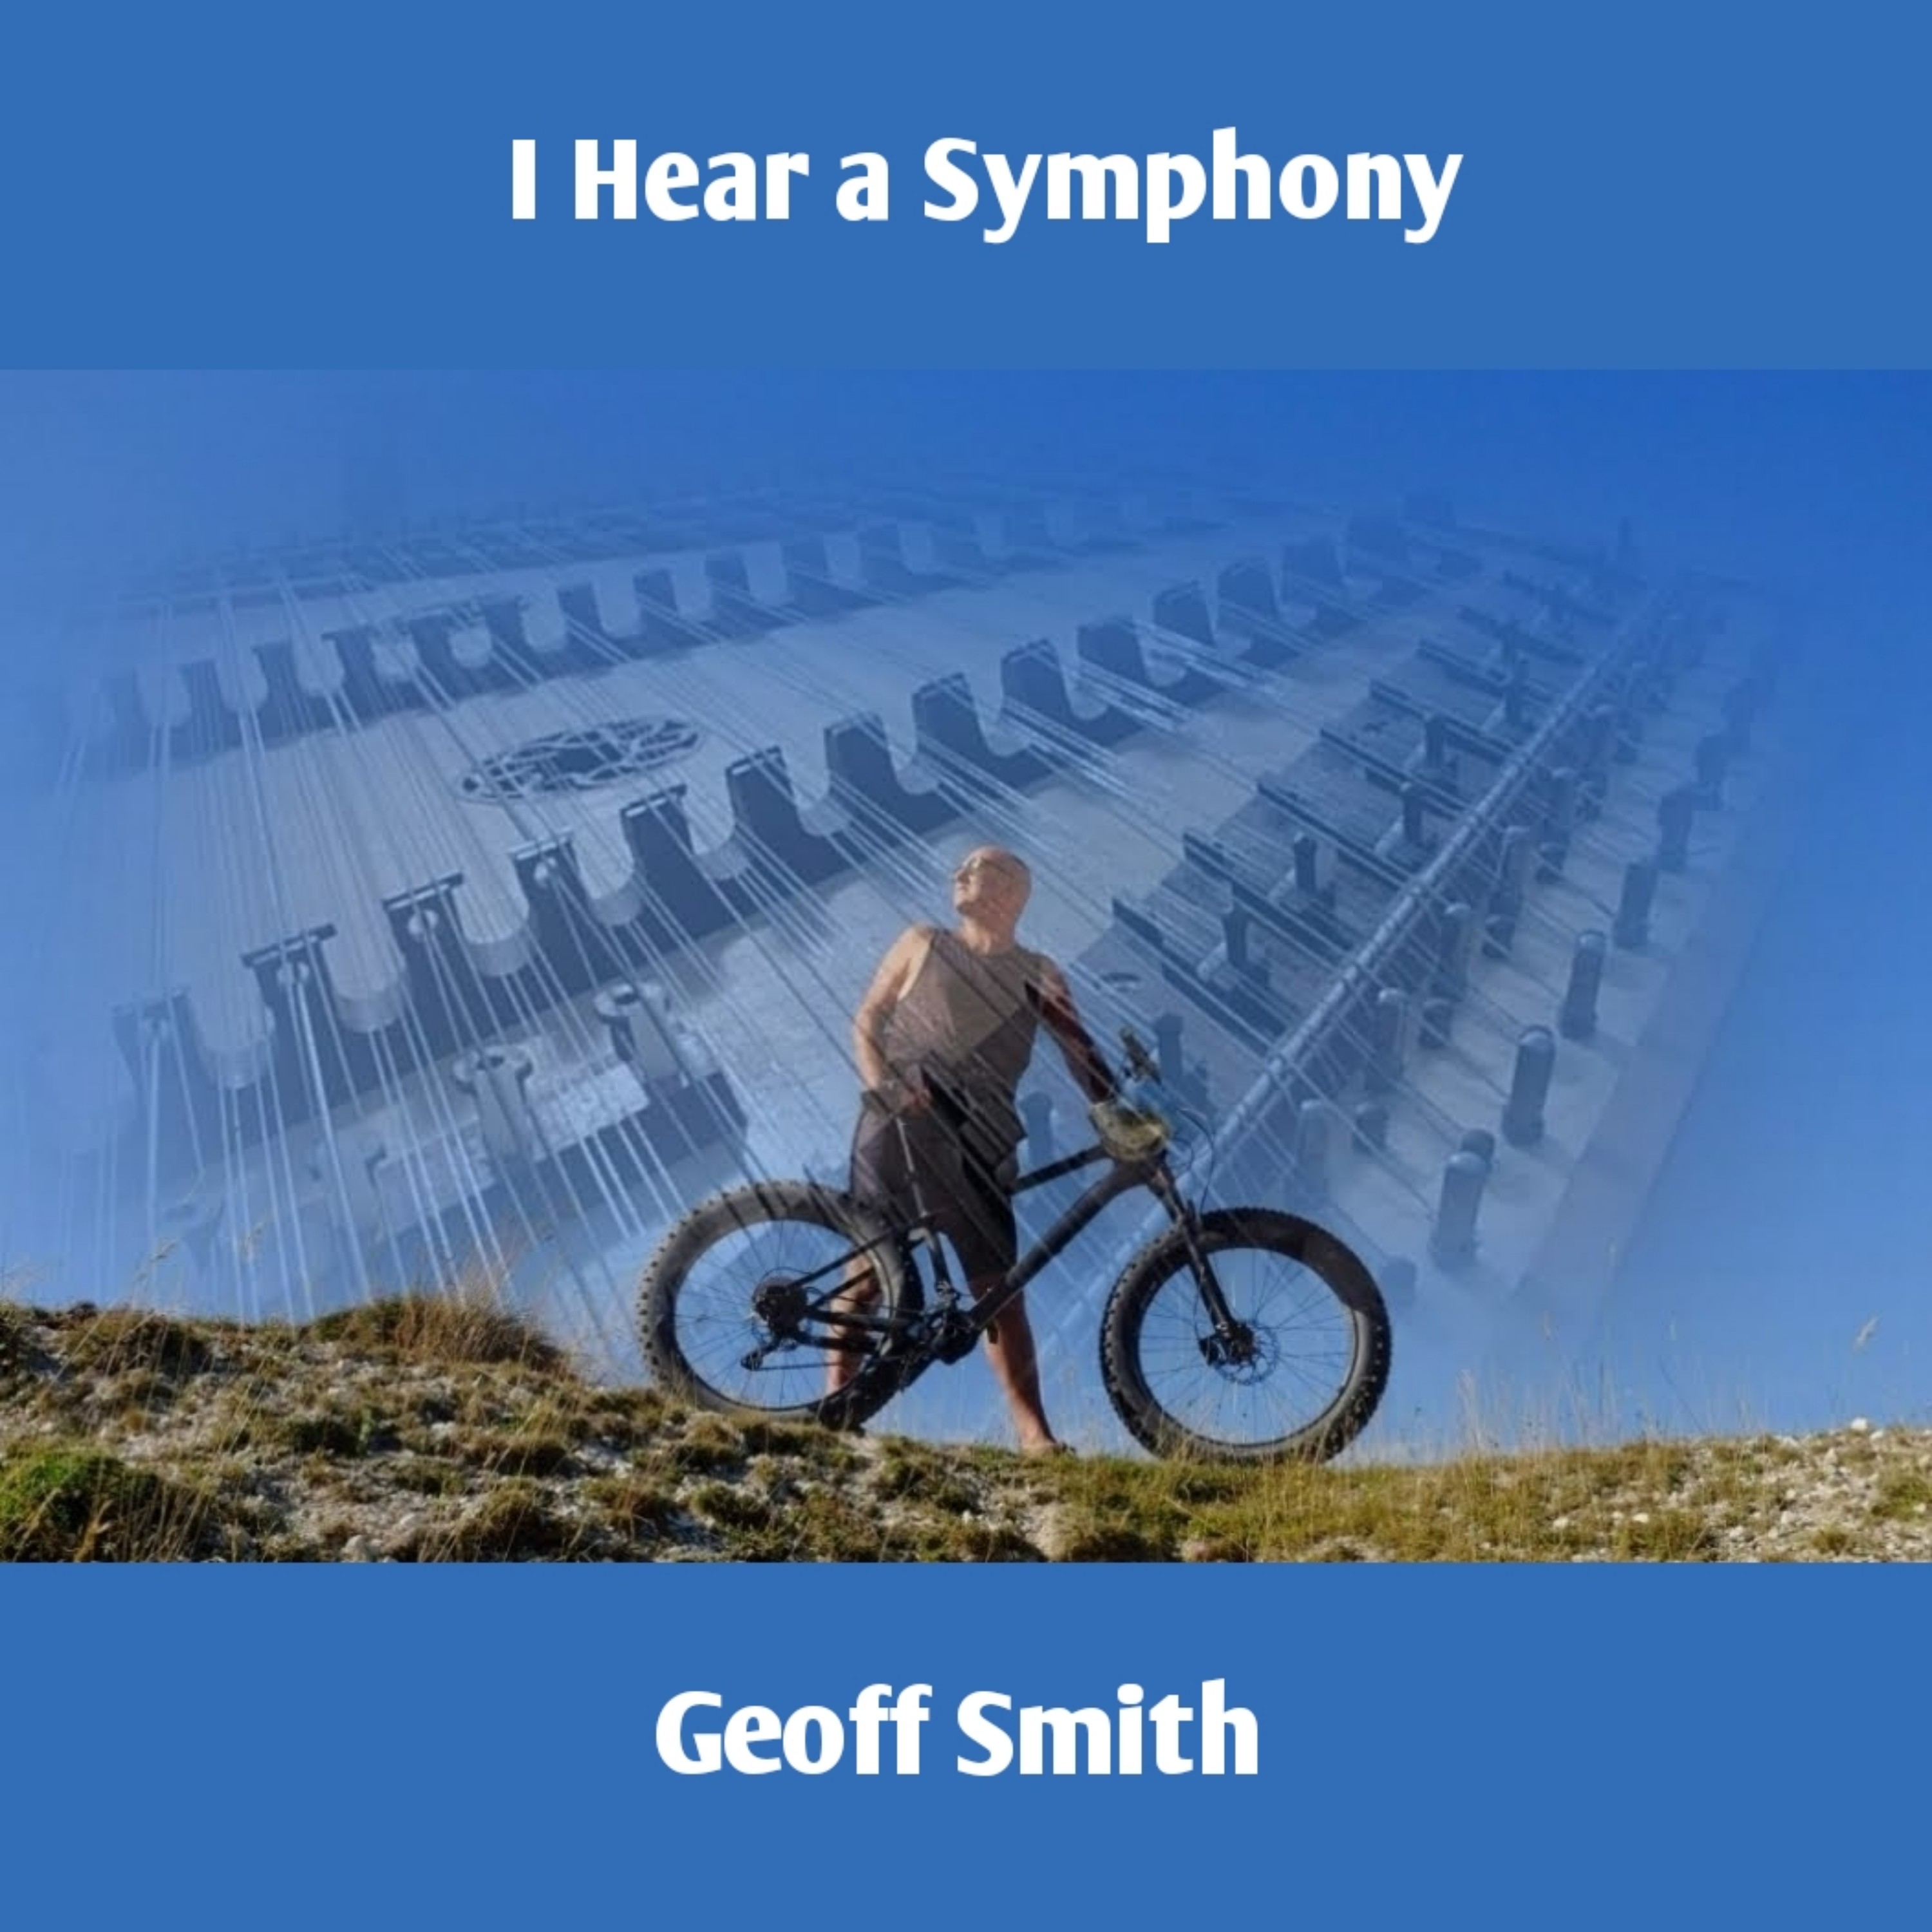 I Hear a Symphony by Geoff Smith artwork - resized to 3000 x 3000jpg